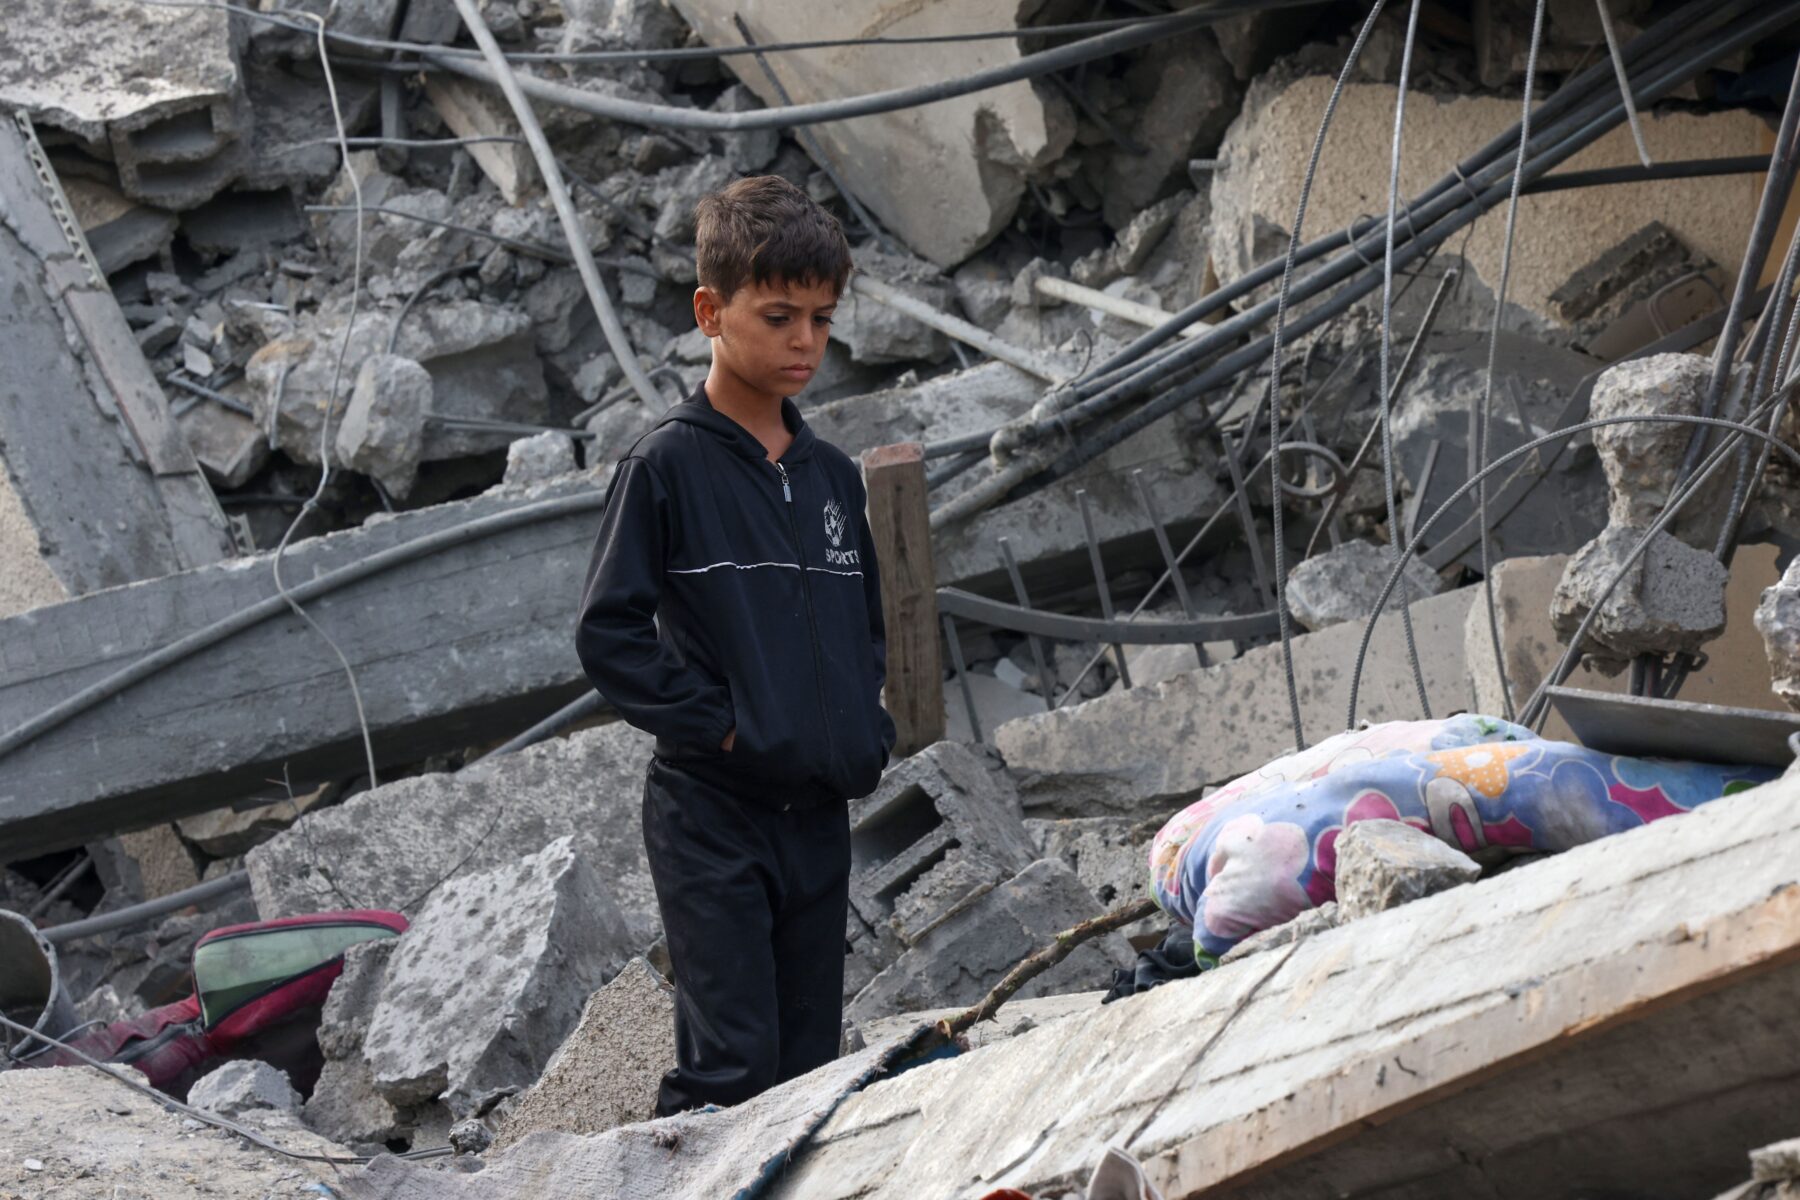 war image of Palestian boy in rubble